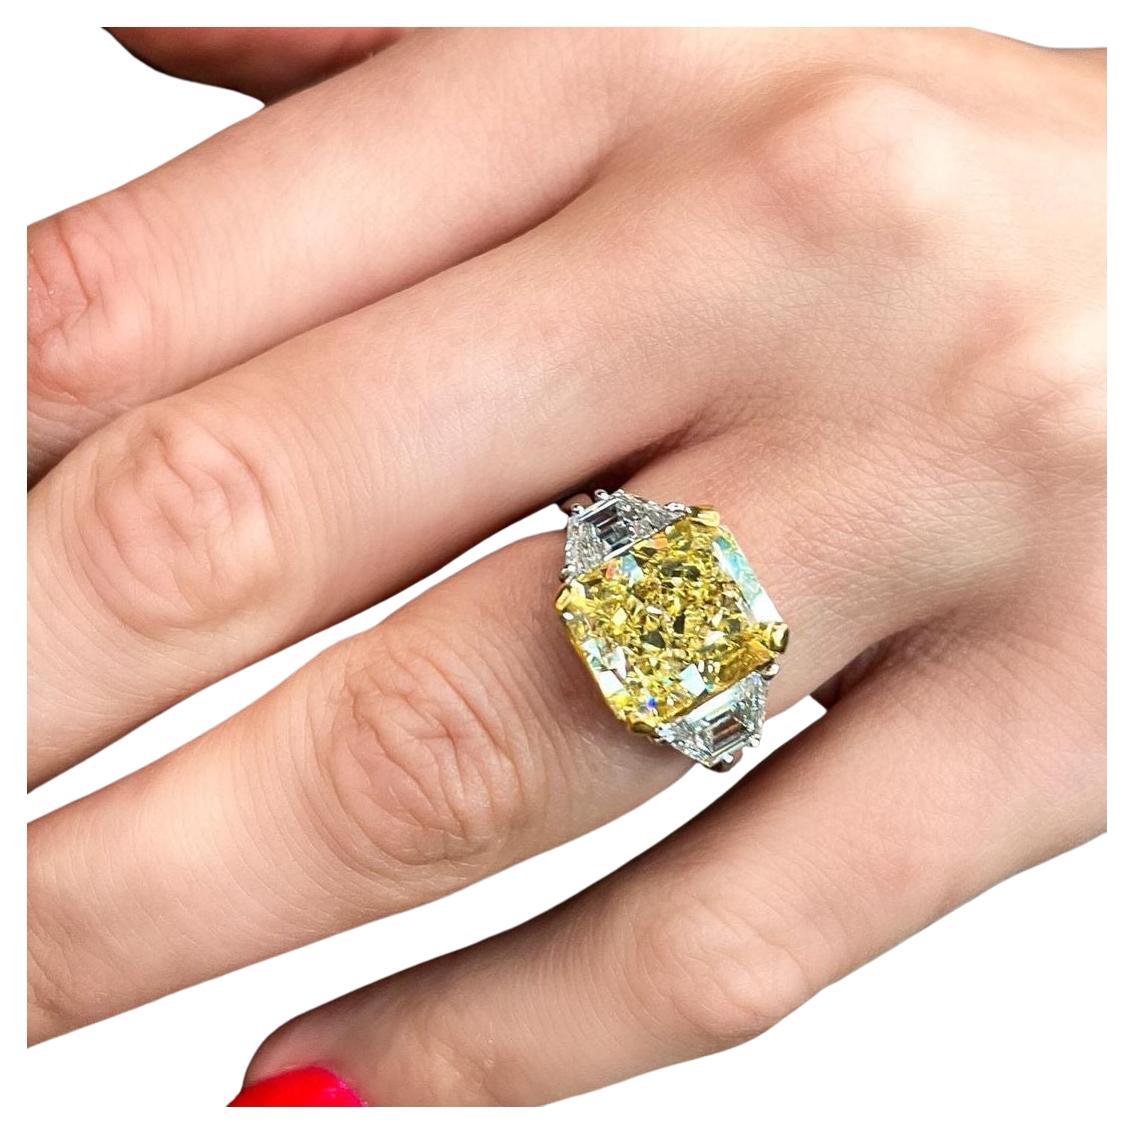 Une magnifique bague en diamant jaune !

Diamant central de 6 carats, certifié par le GIA, de taille radiant, de couleur jaune fantaisie.

.85 carats de diamants blancs.

Monture personnalisée en platine et en or jaune 18 carats.

Taille 7, cette